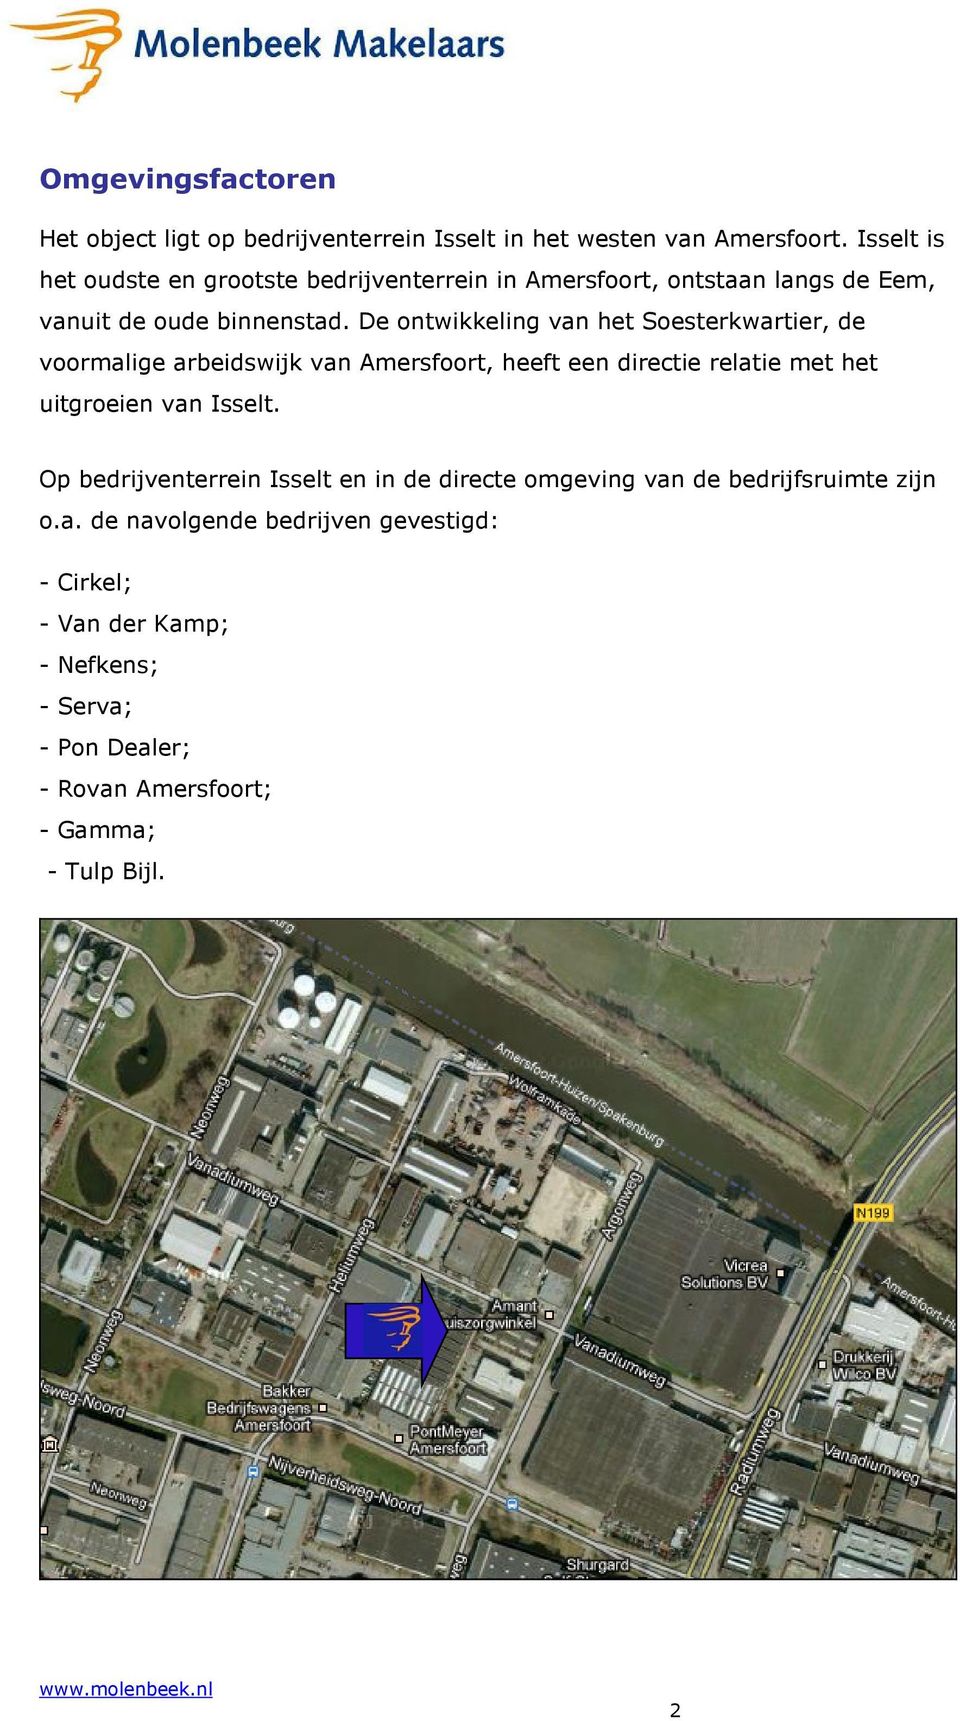 De ontwikkeling van het Soesterkwartier, de voormalige arbeidswijk van Amersfoort, heeft een directie relatie met het uitgroeien van Isselt.